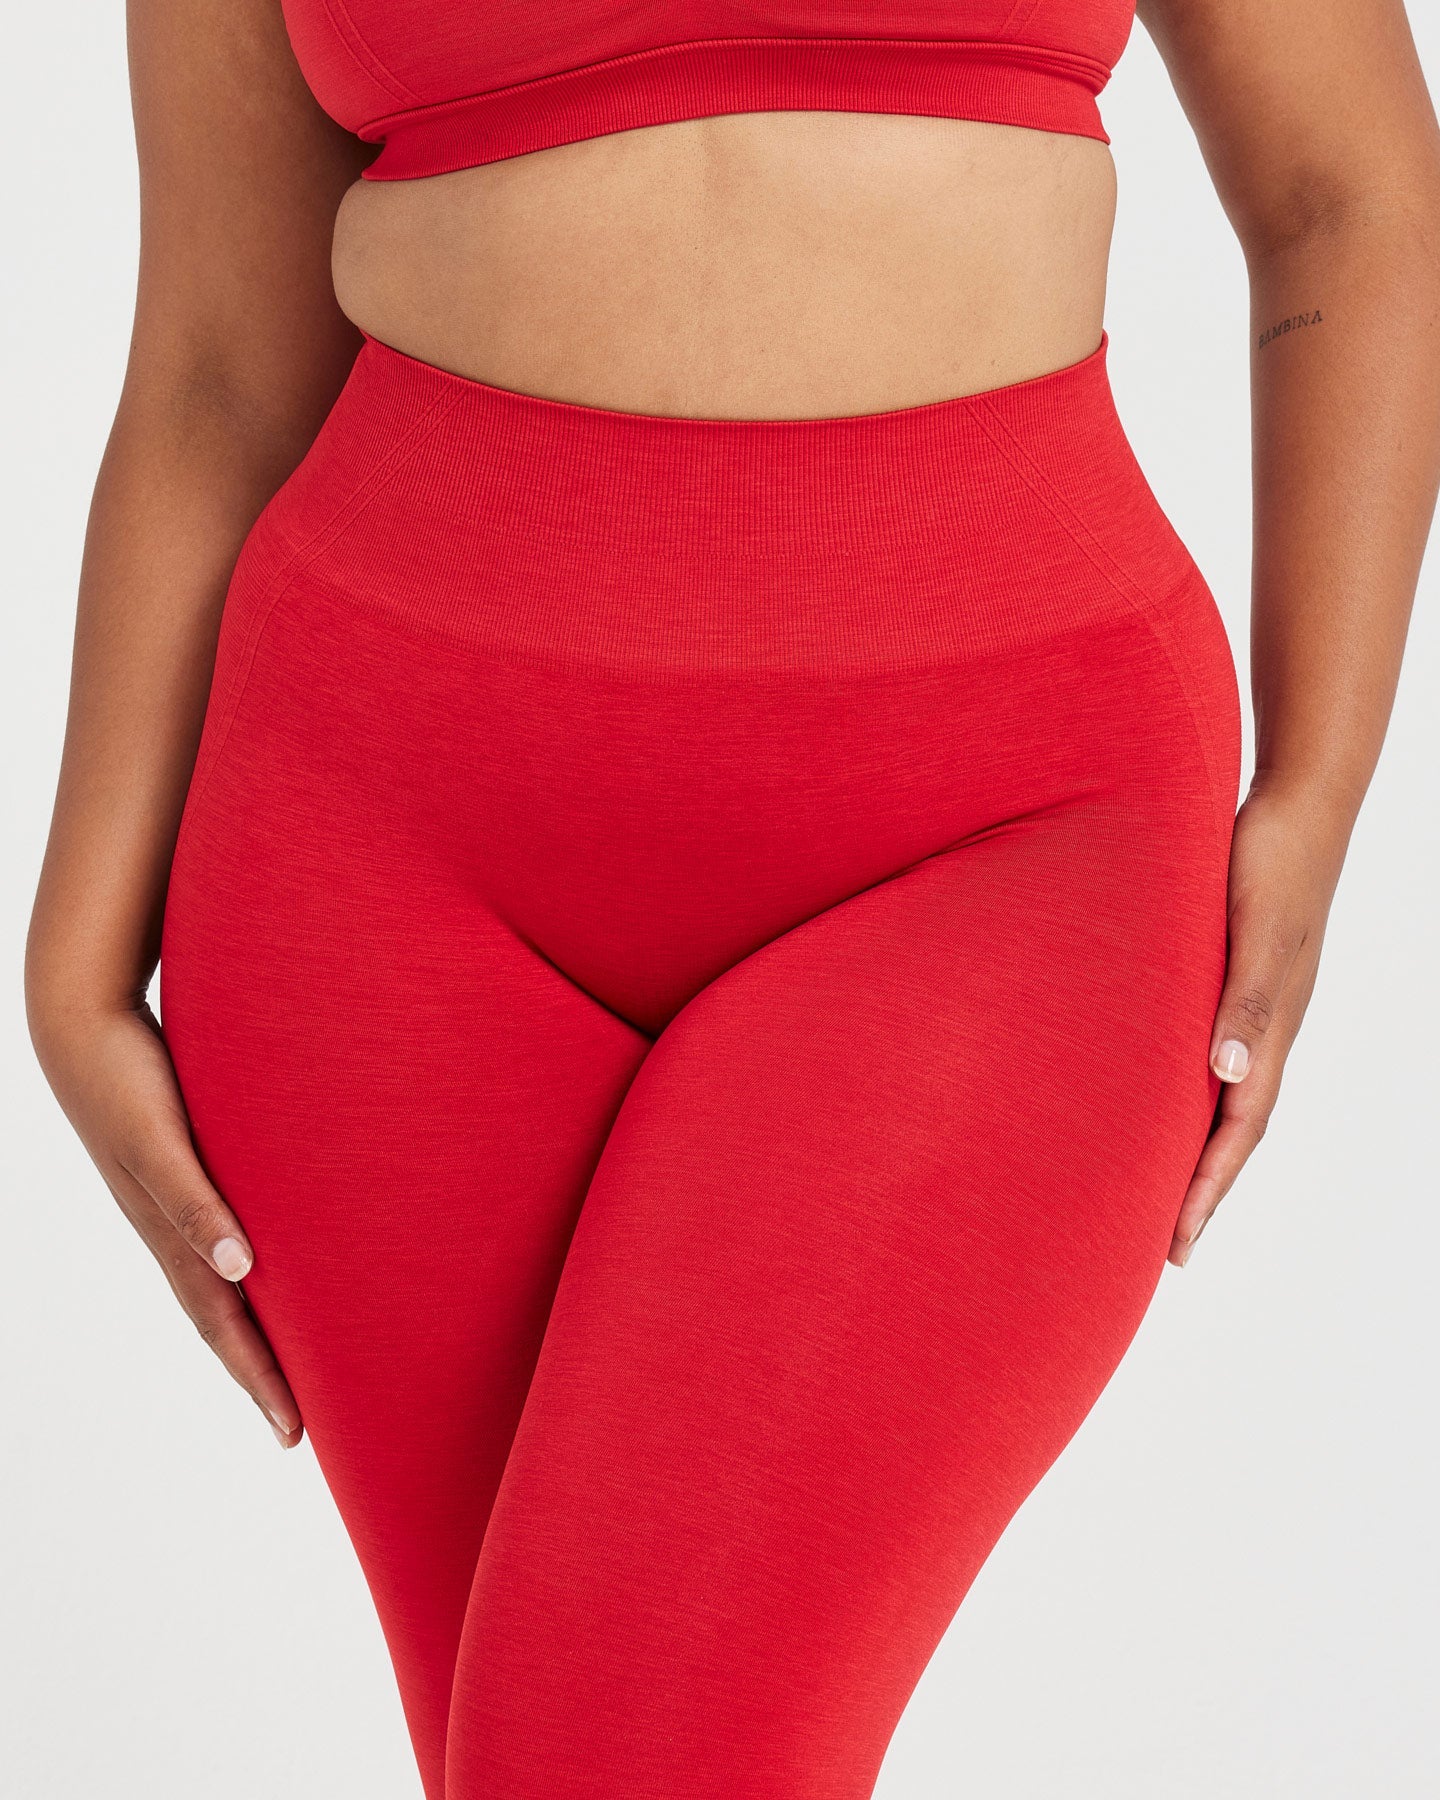 AirFlex Seamless Leggings - Red, Womens Gym Clothing